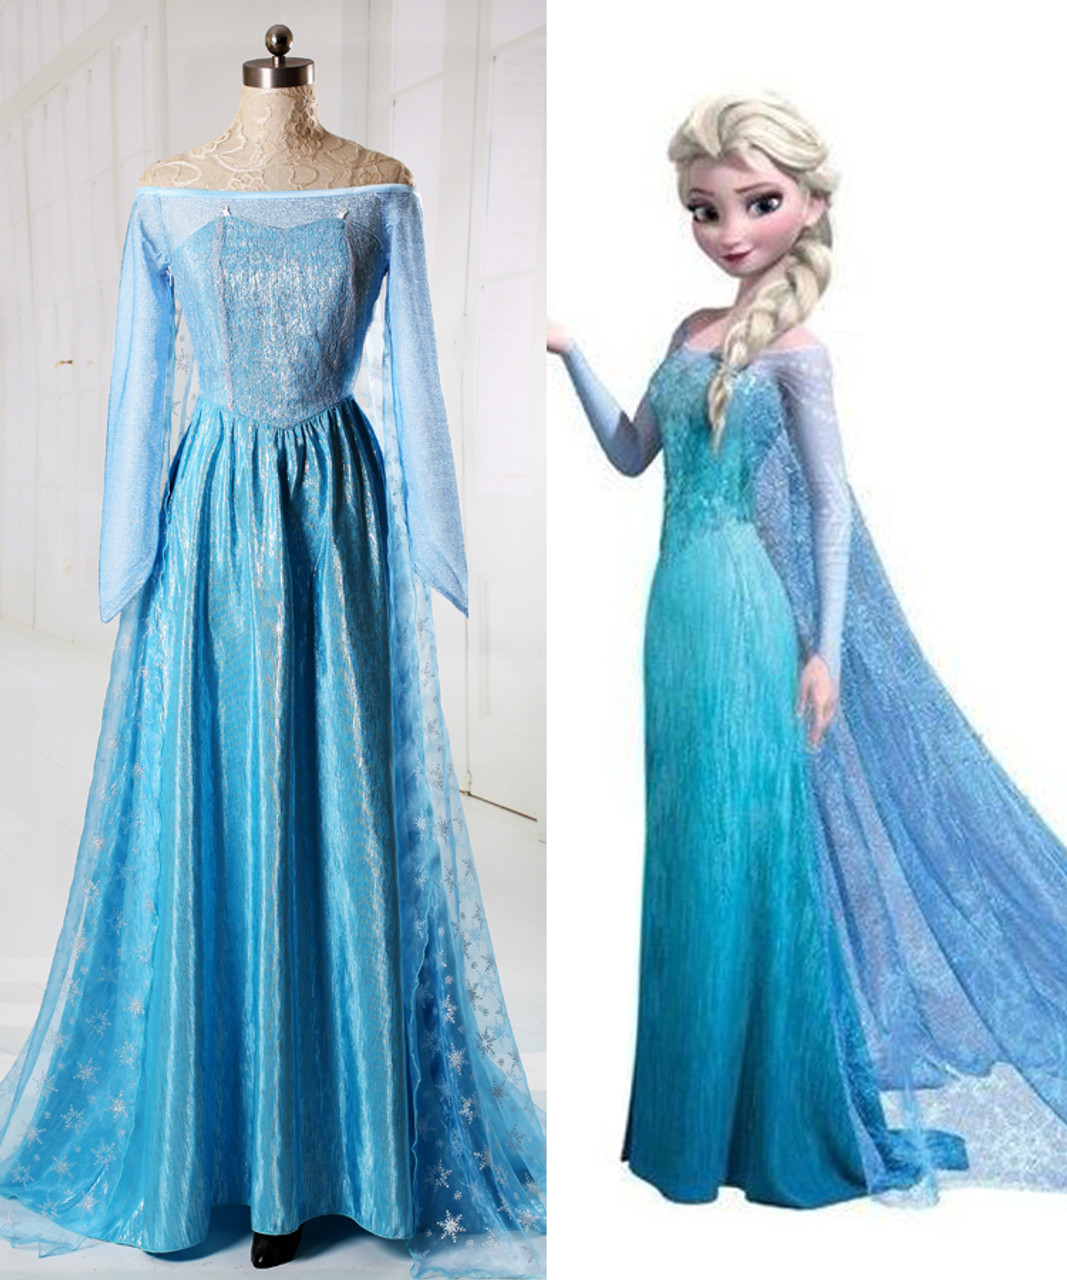 Disney Frozen ( Movie) Cosplay, Elsa Costume Adult Women ...